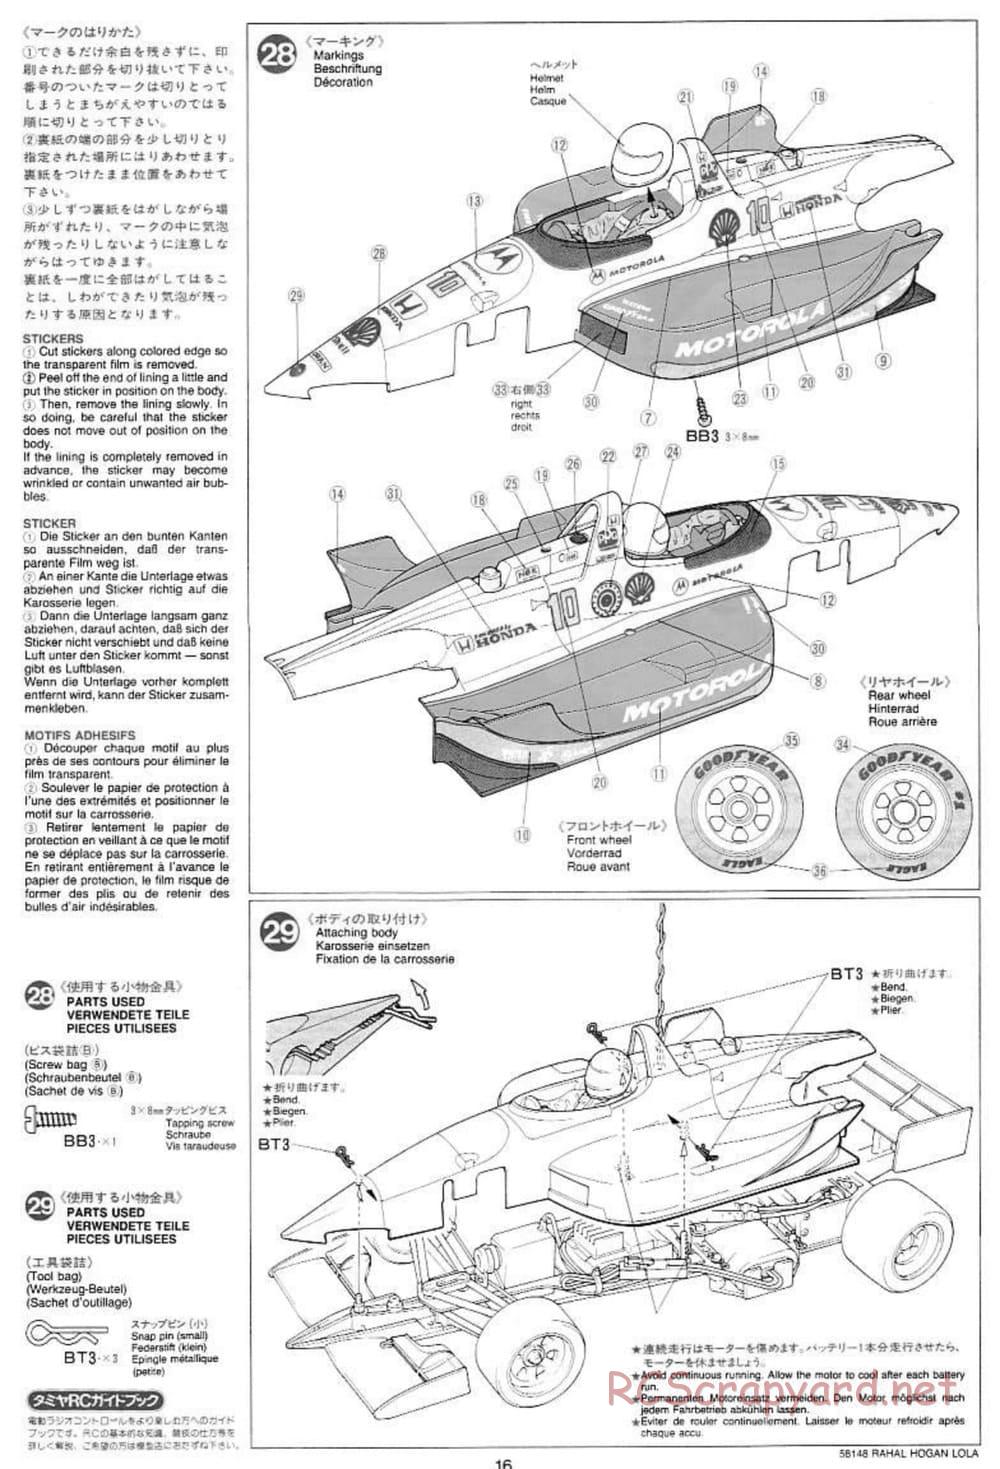 Tamiya - Rahal-Hogan Motorola Lola T94/00 Honda - F103L Chassis - Manual - Page 16